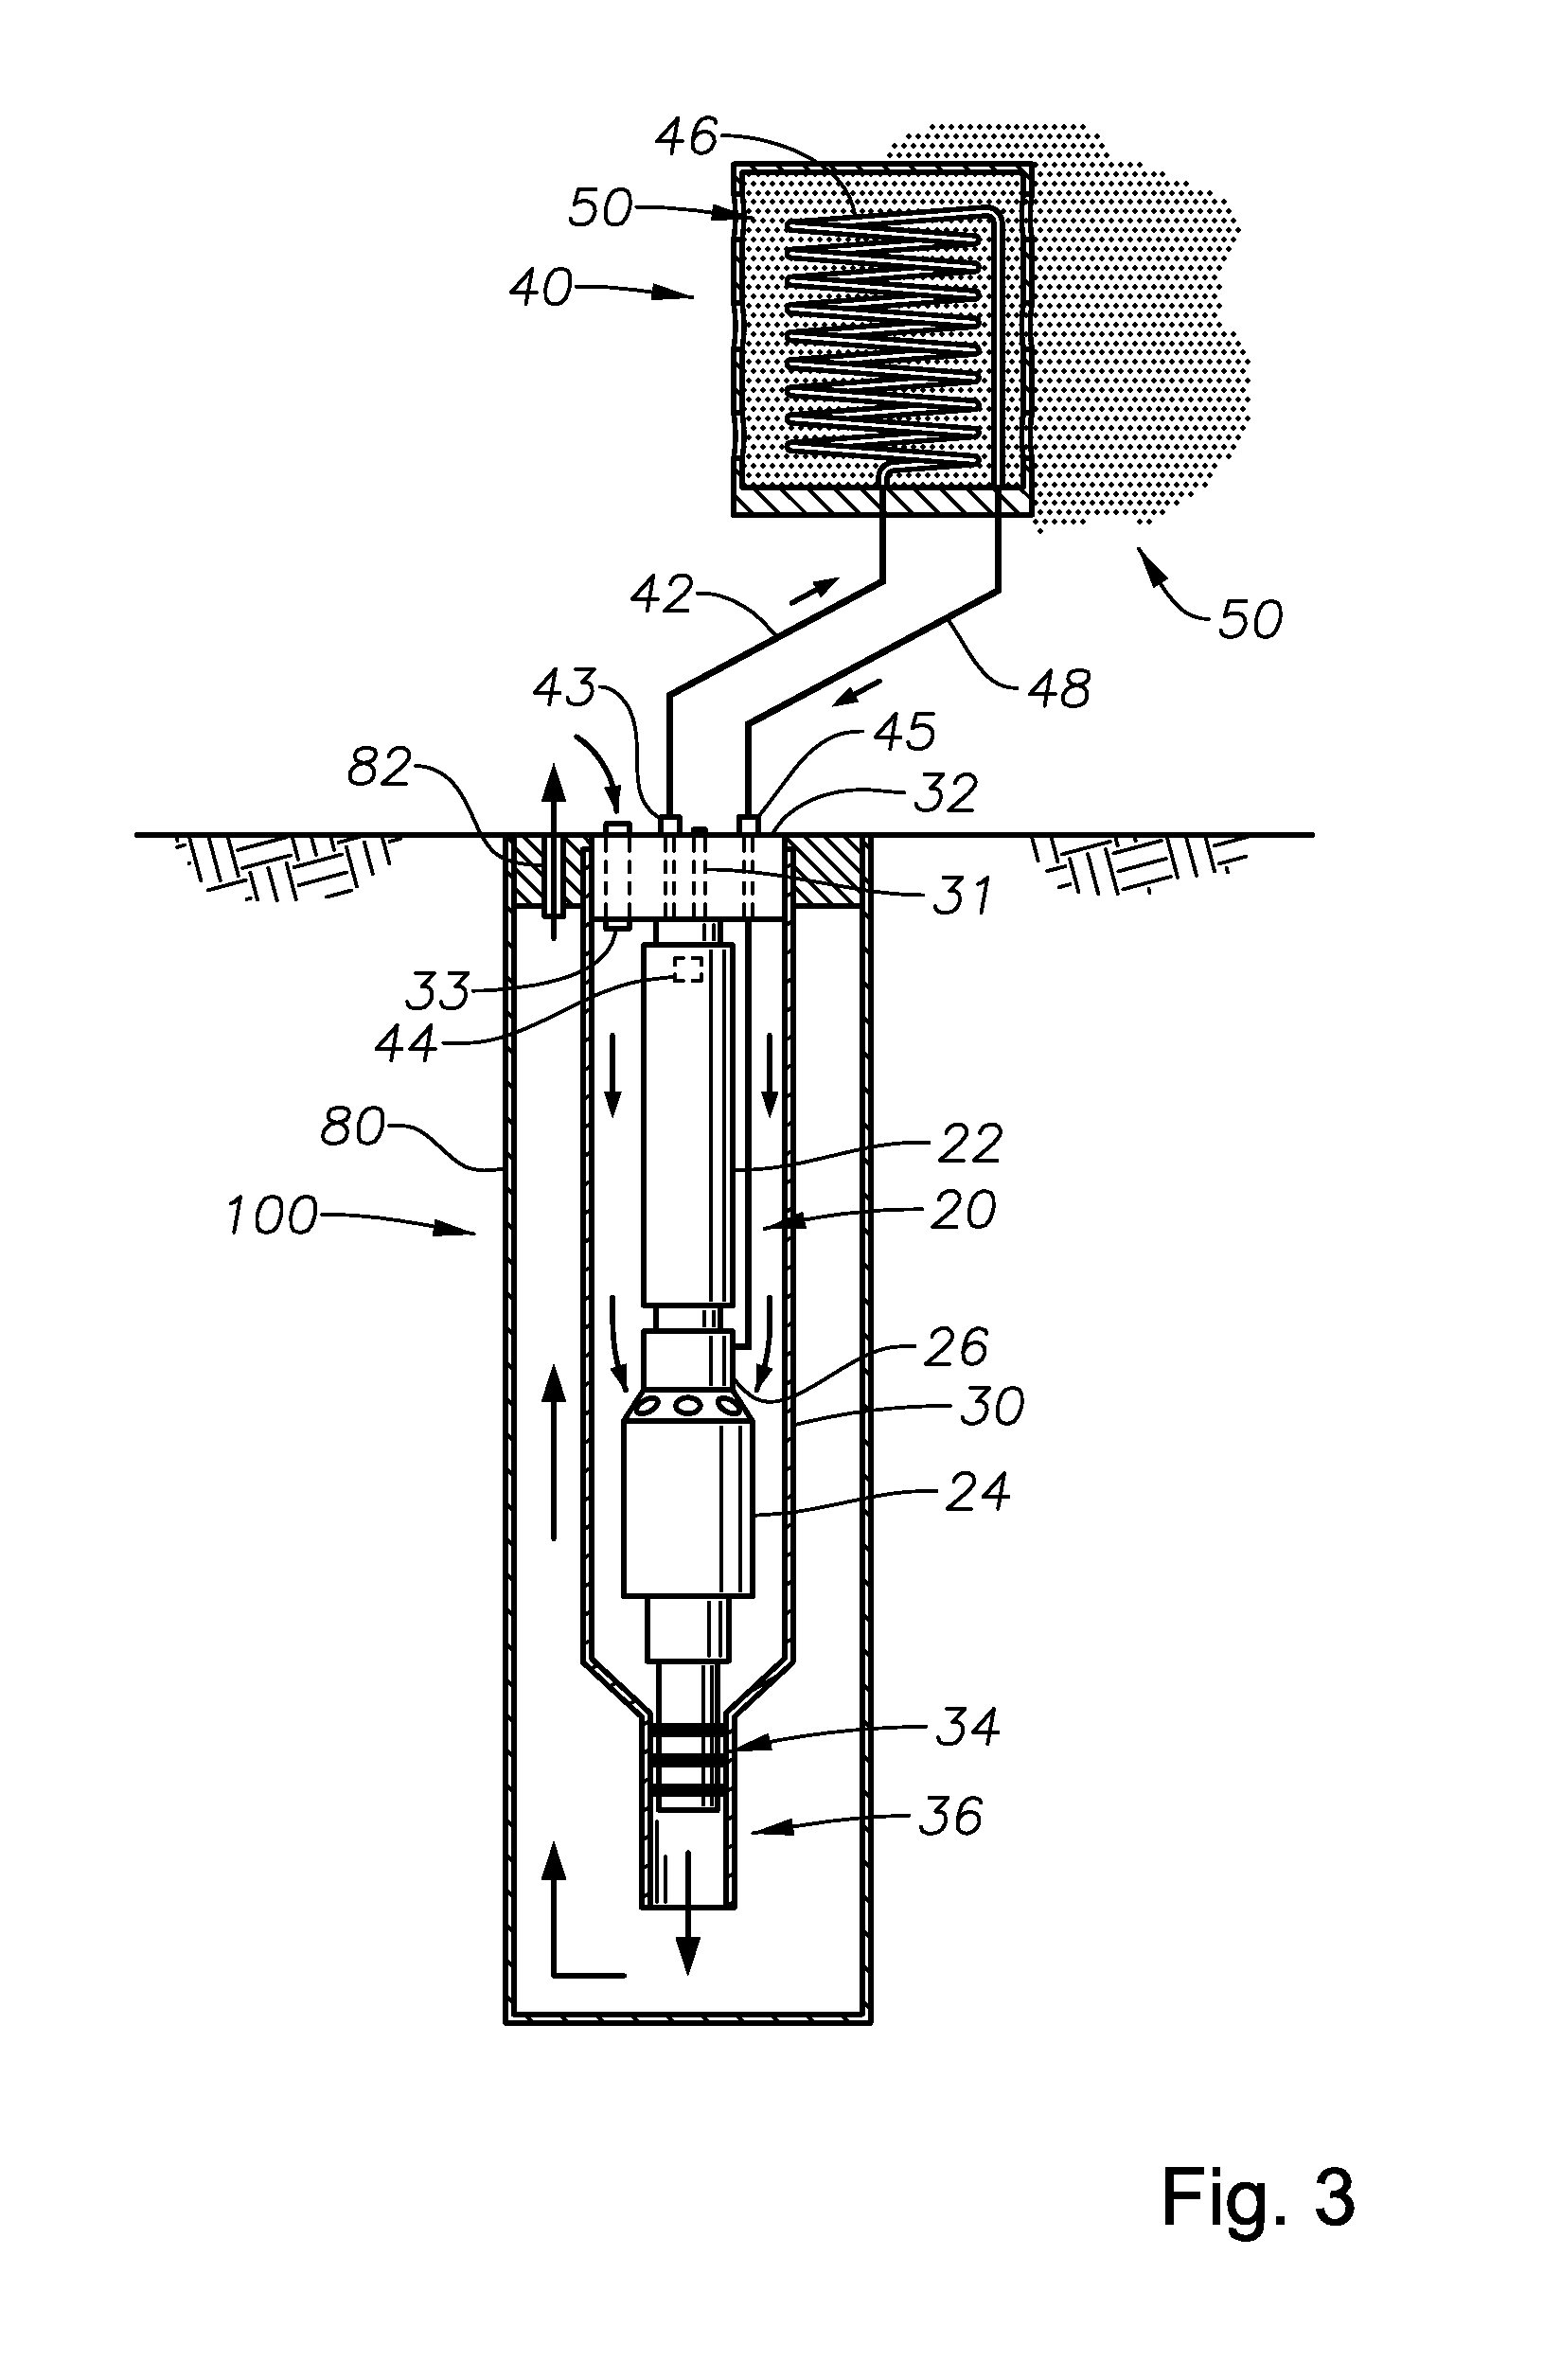 Heat exchanger for esp motor